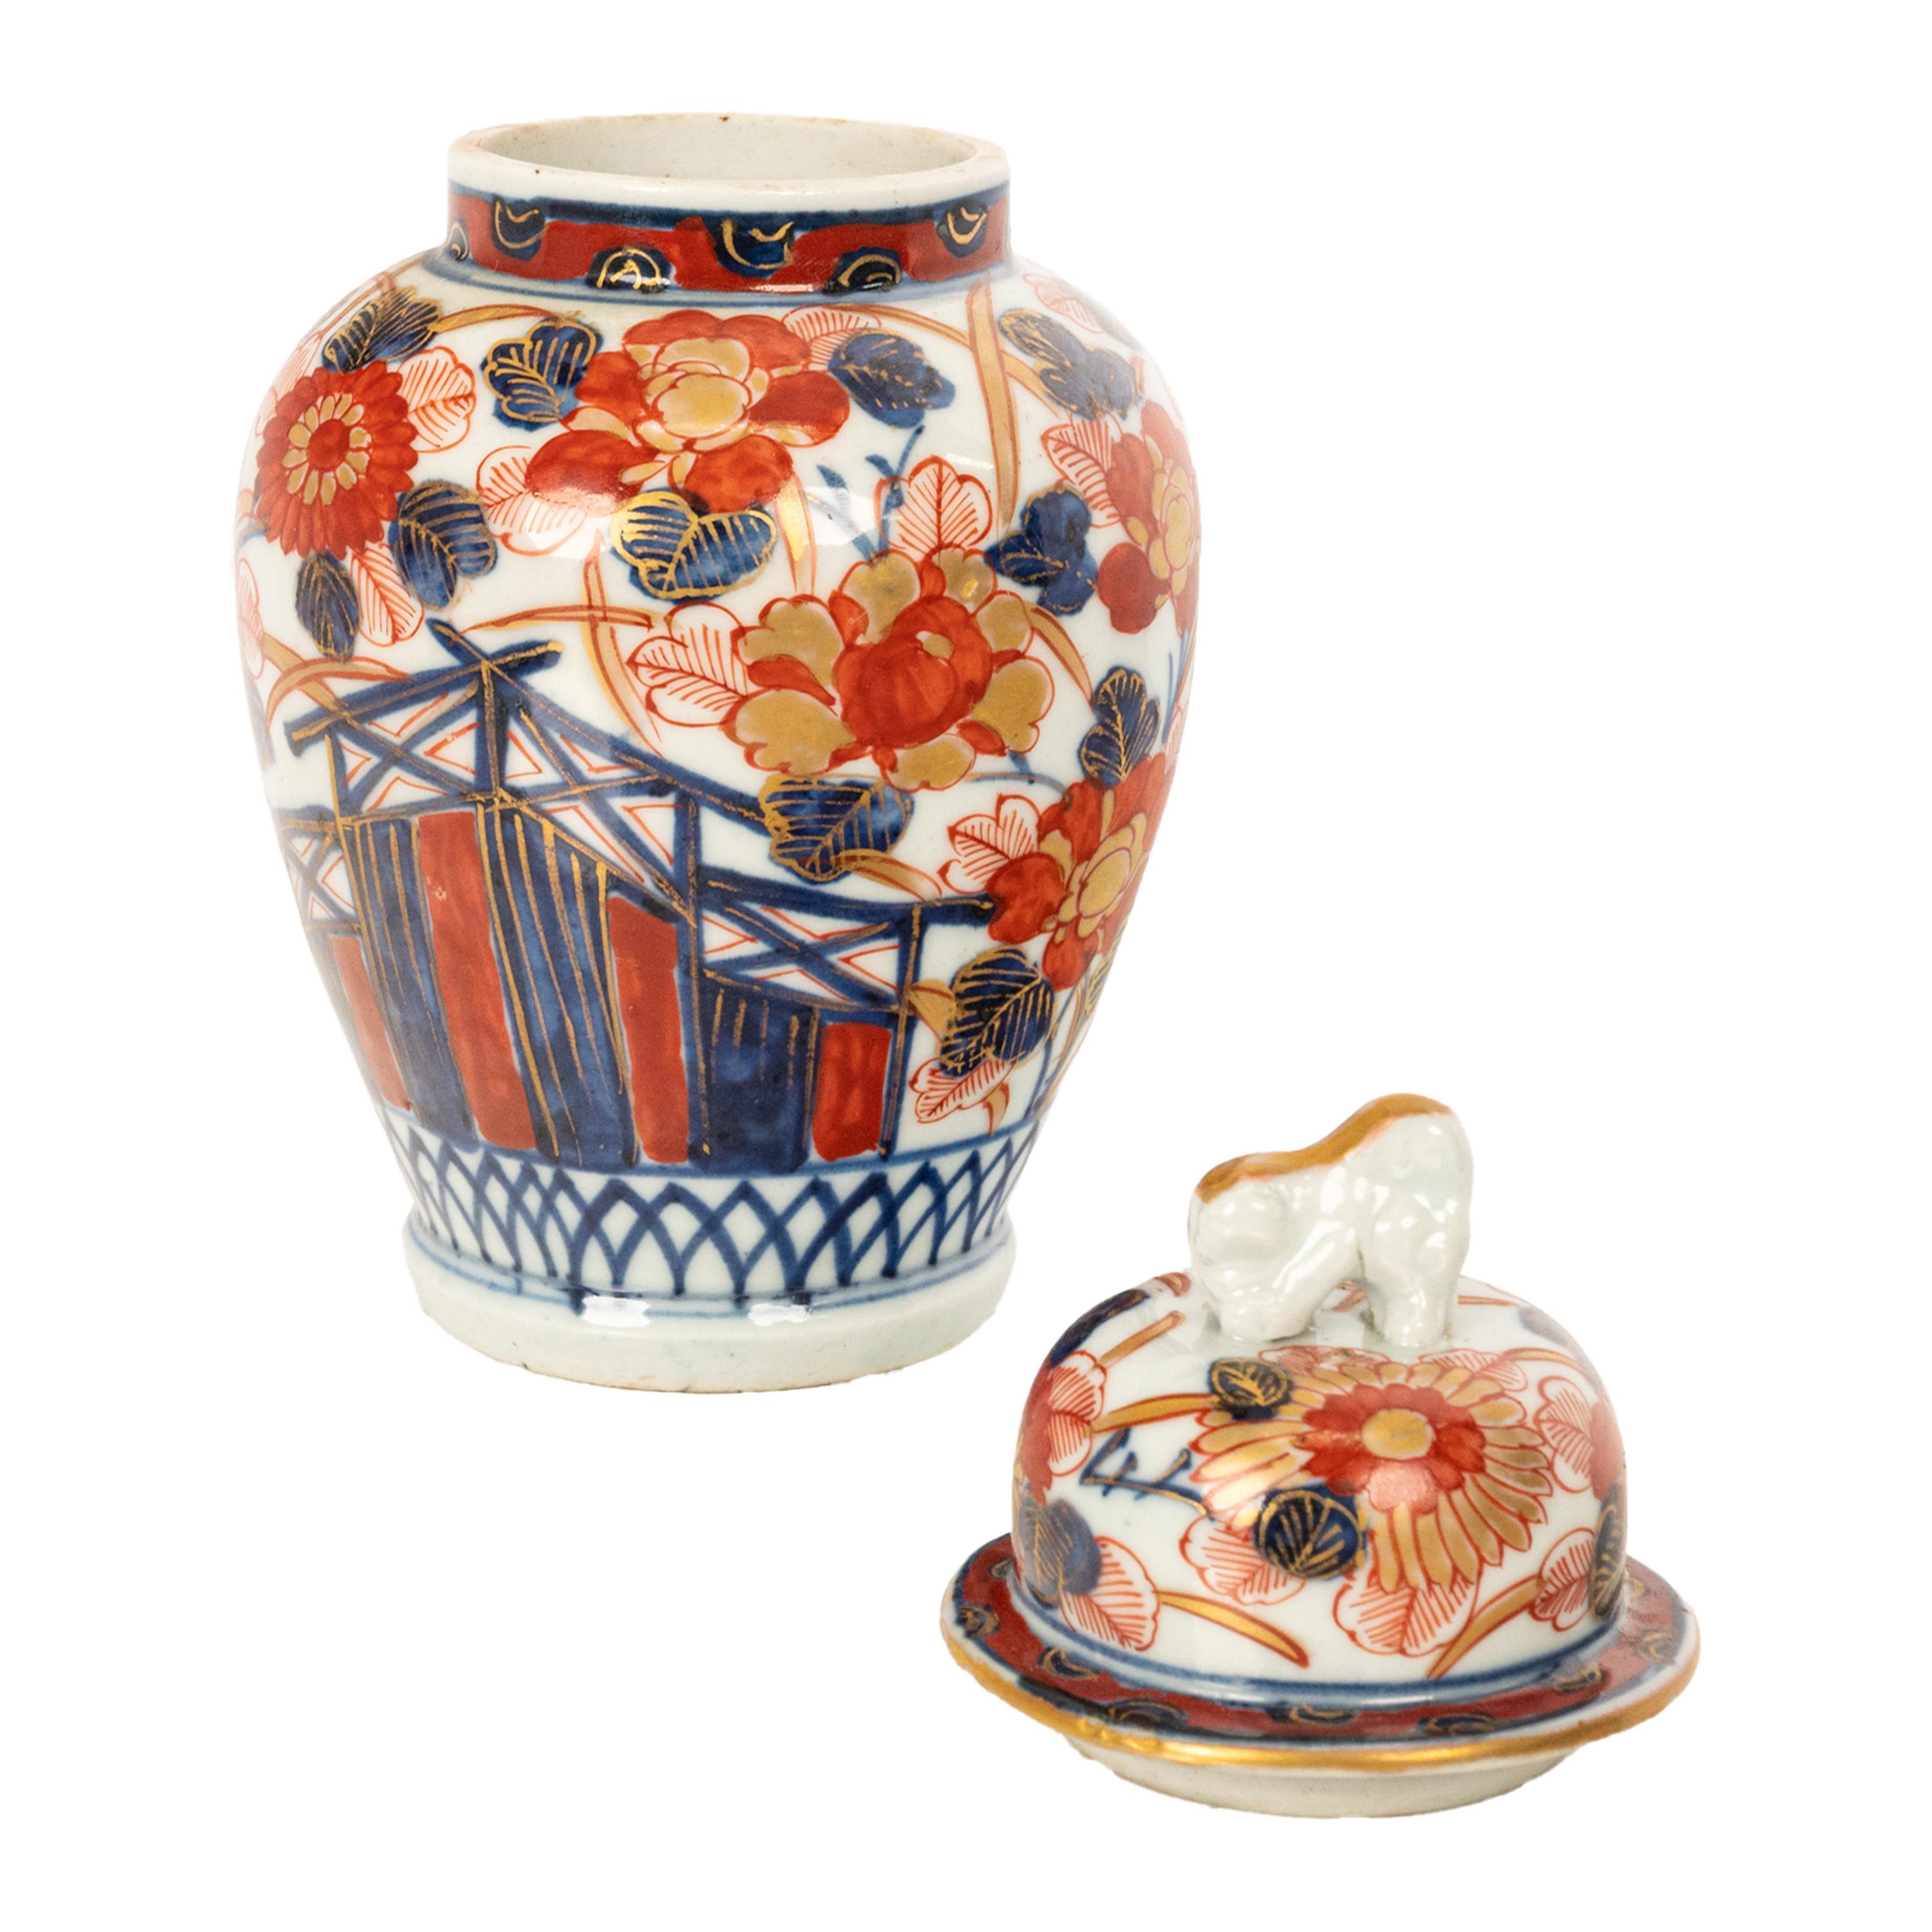 Antique 19thC Japanese Porcelain Meiji Period Imari Lidded Ginger Jar Vase 1890 For Sale 3